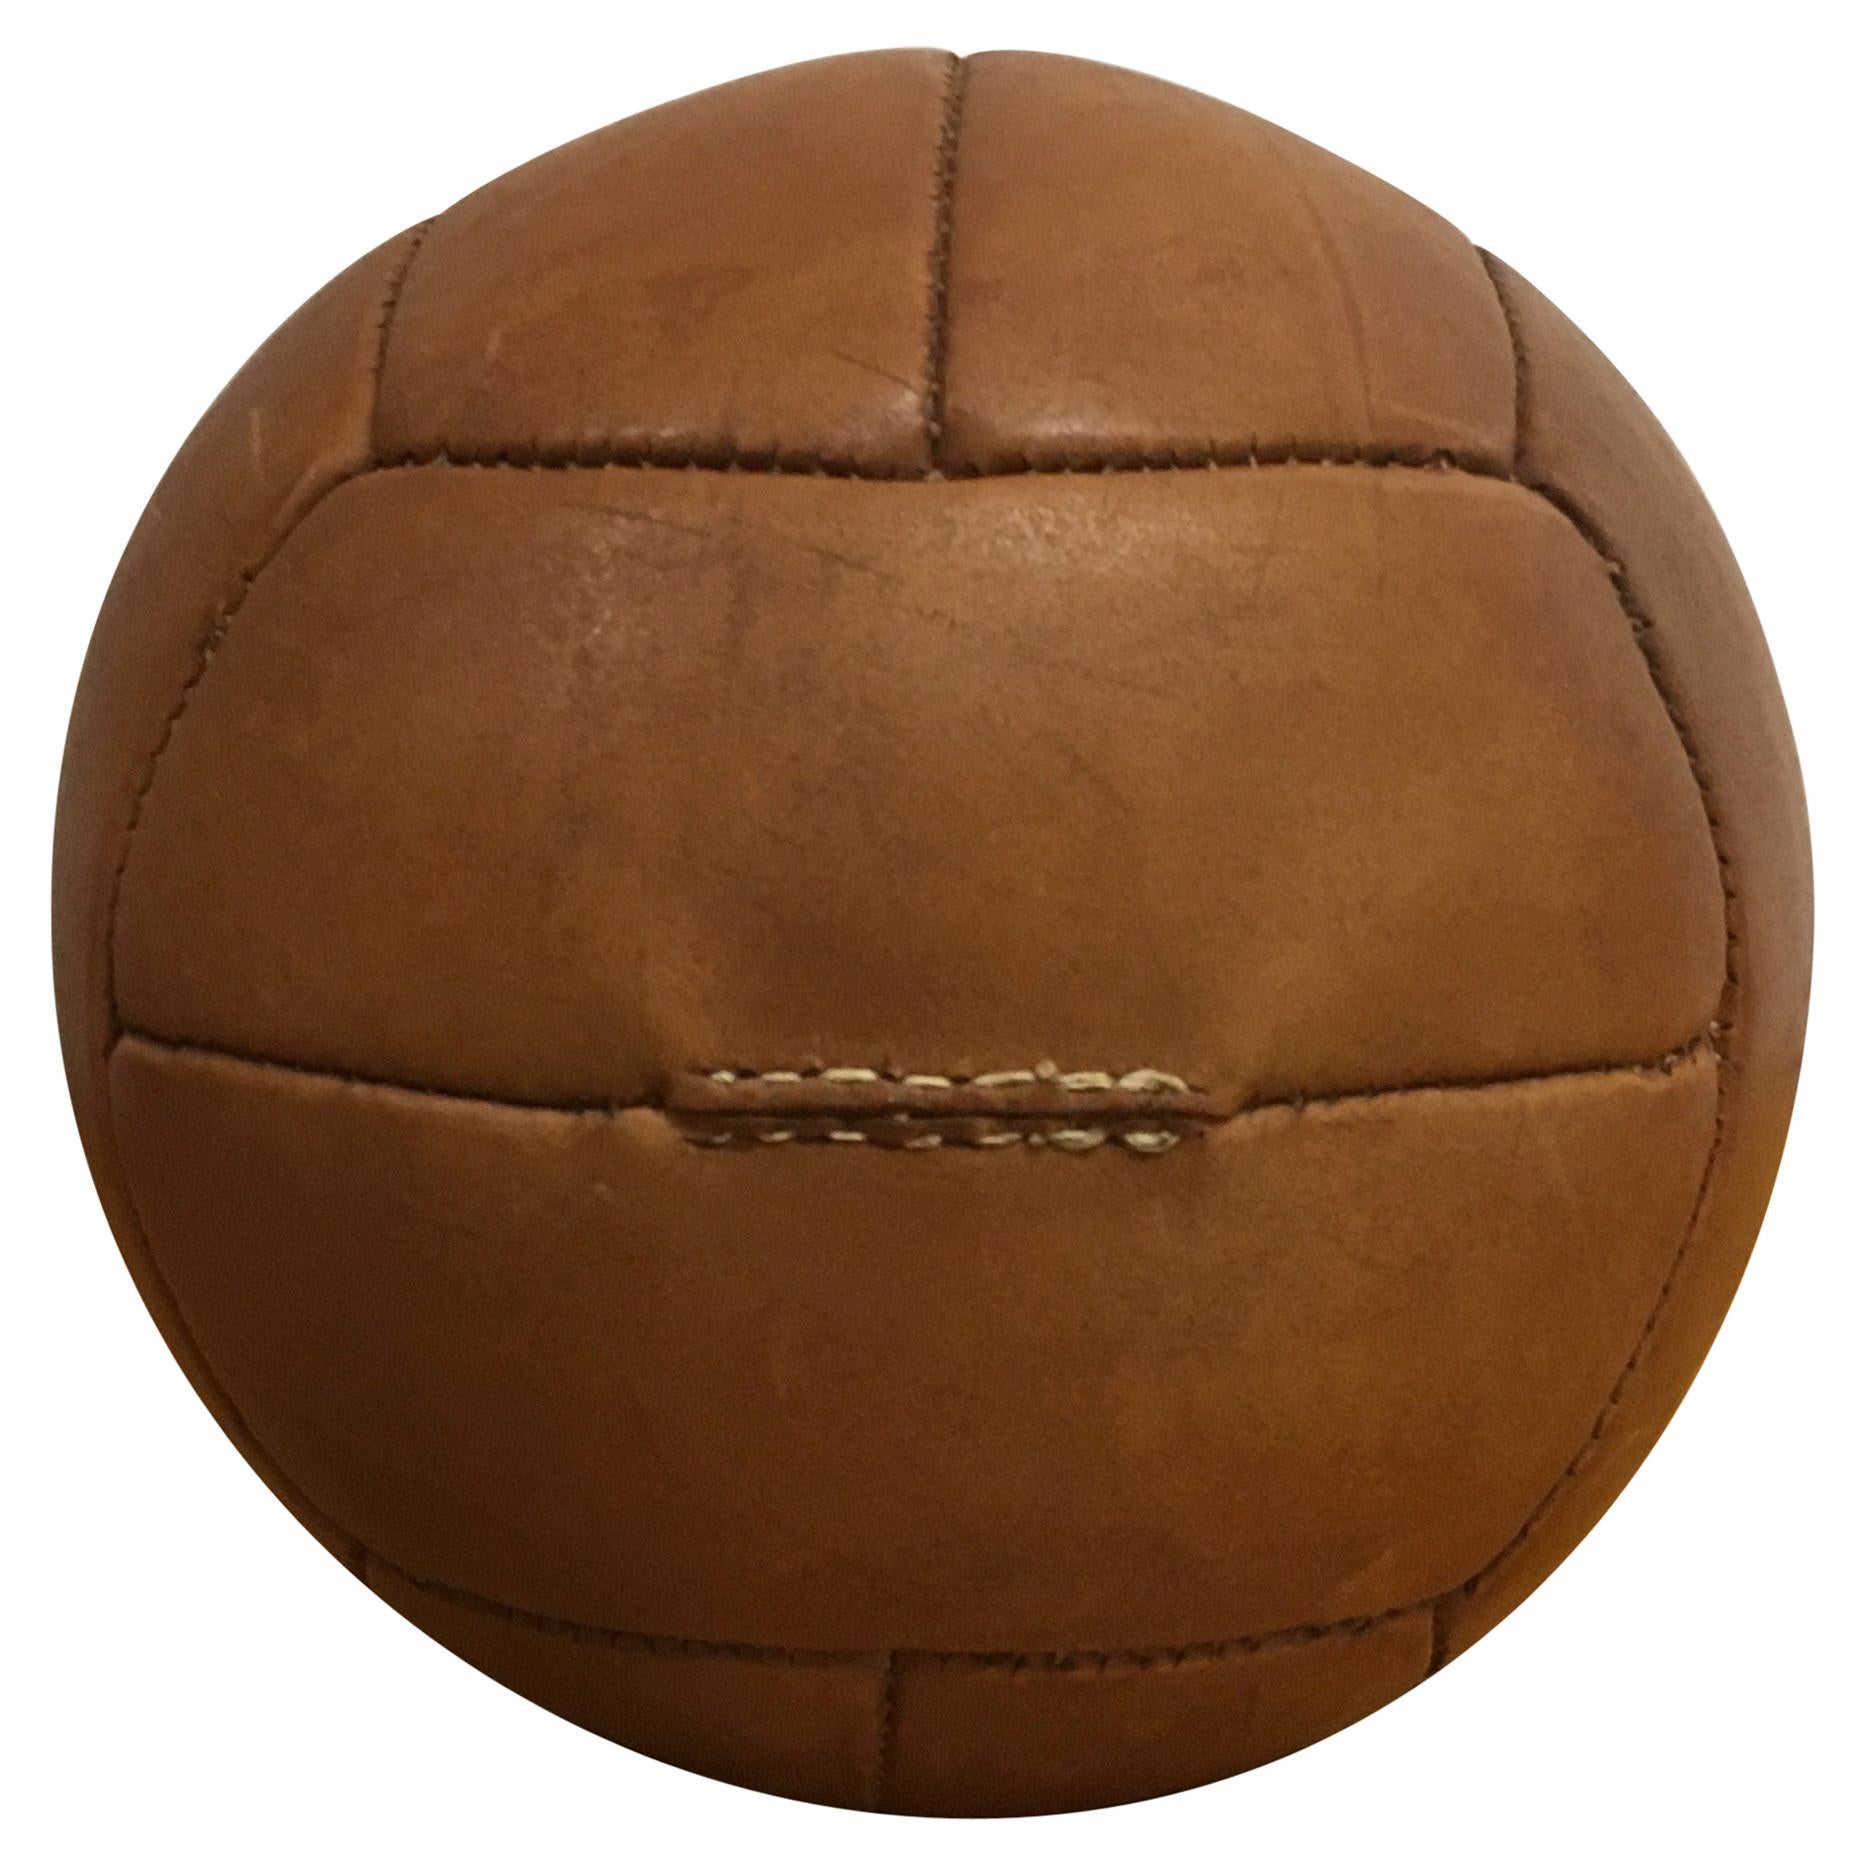 Vintage Brown Leather Medicine Ball, 2kg, 1930s